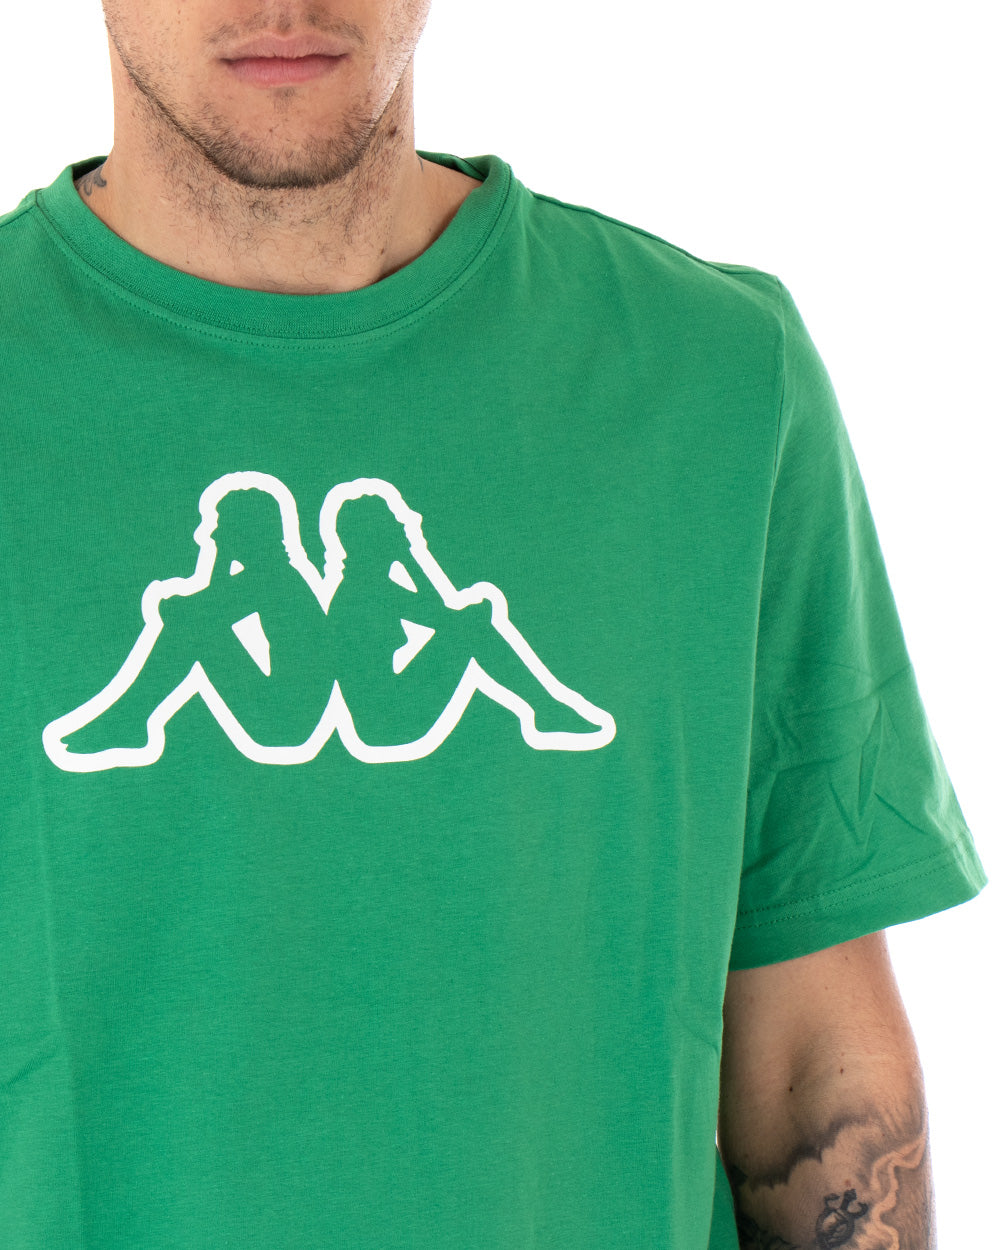 T-shirt Uomo Kappa  MM Logo Cromen Tinta Unita Verde Girocollo Maniche Corte Casual GIOSAL